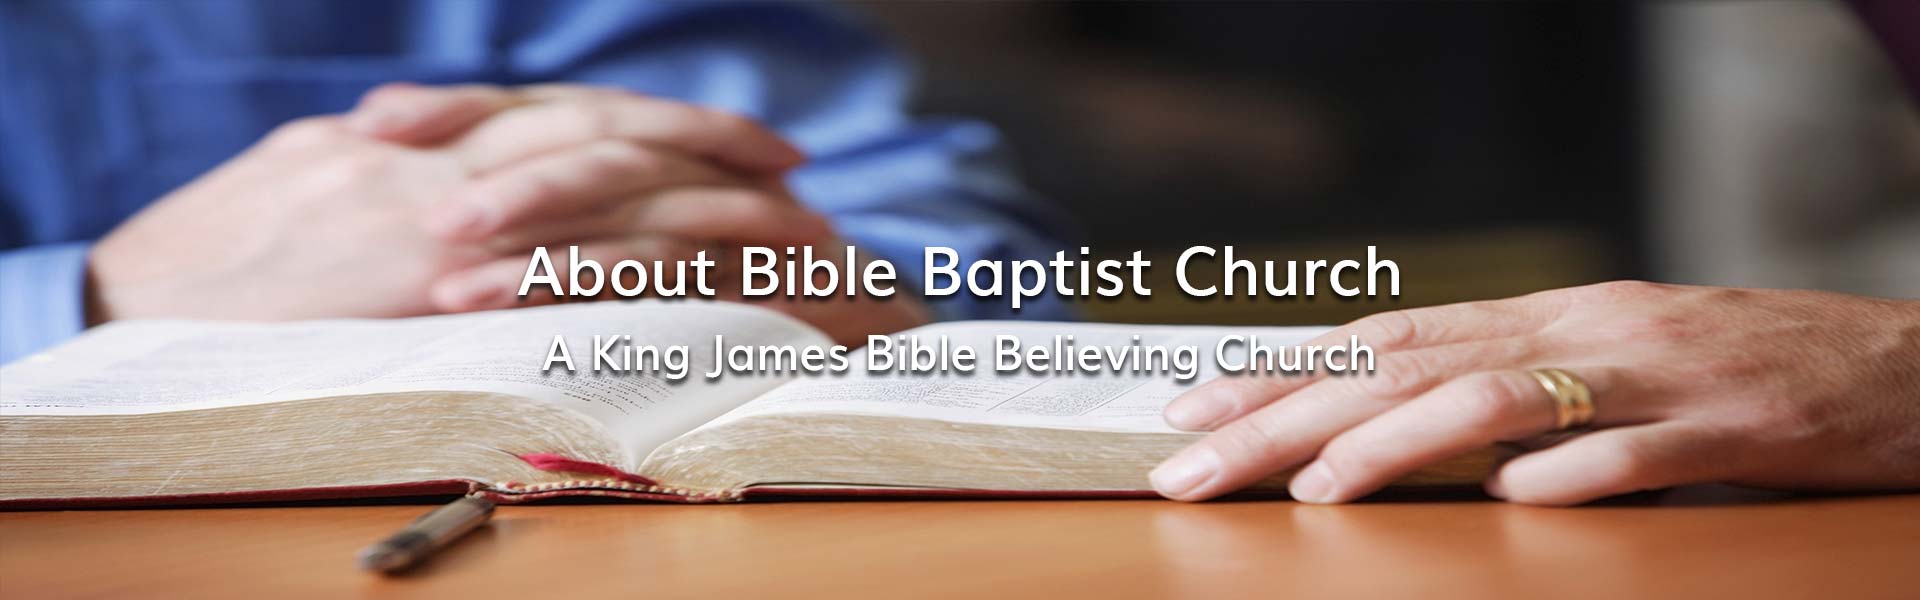 About Bible Baptist Church Chino Valley Arizona